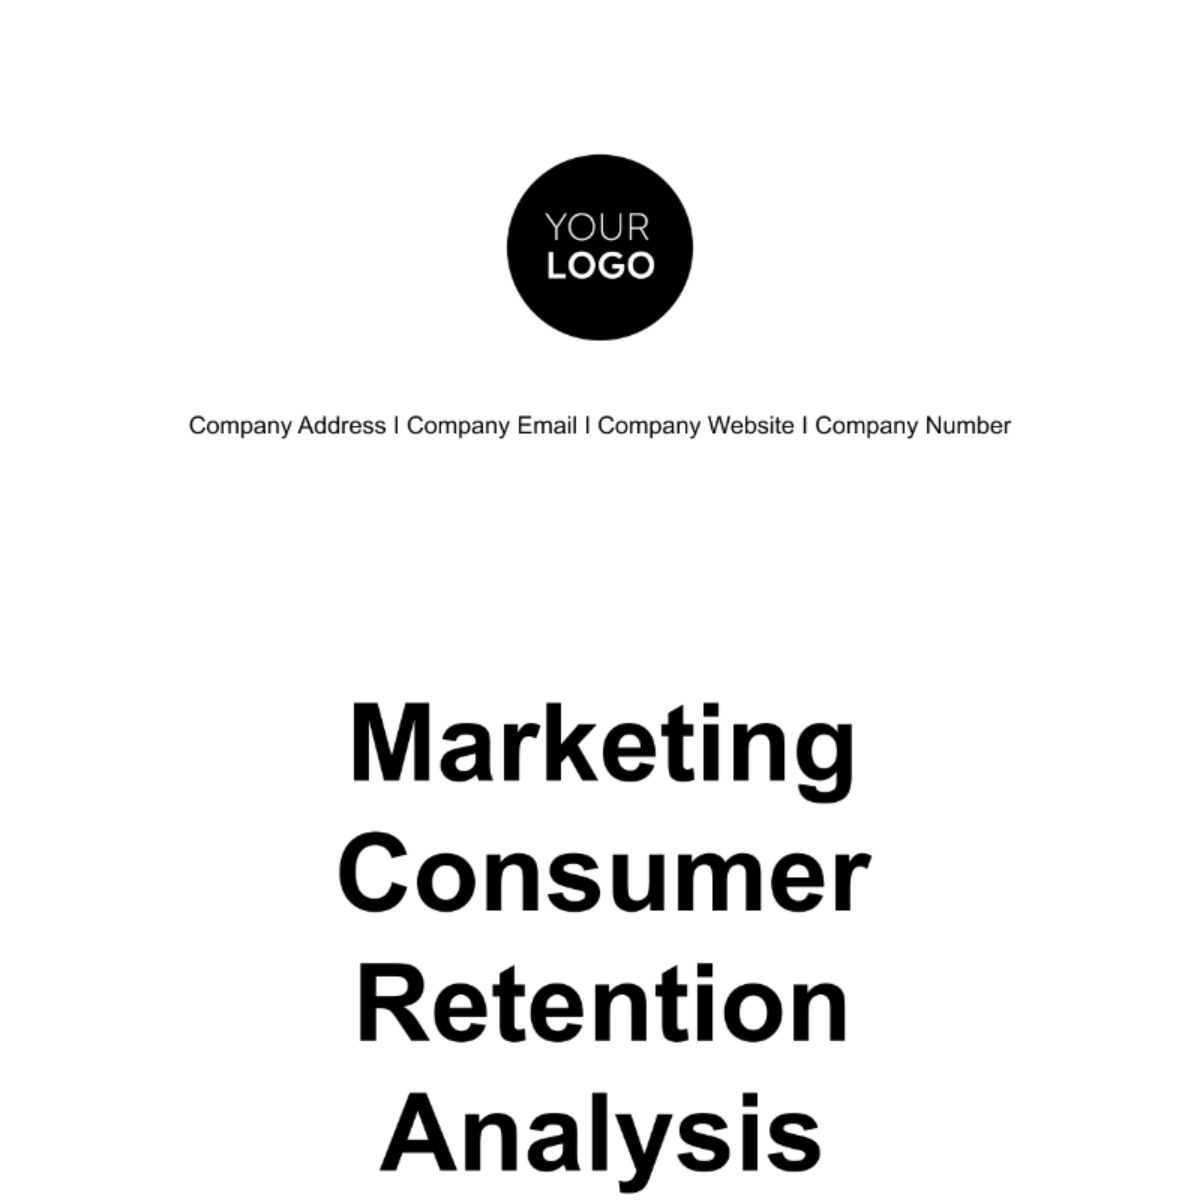 Marketing Consumer Retention Analysis Template